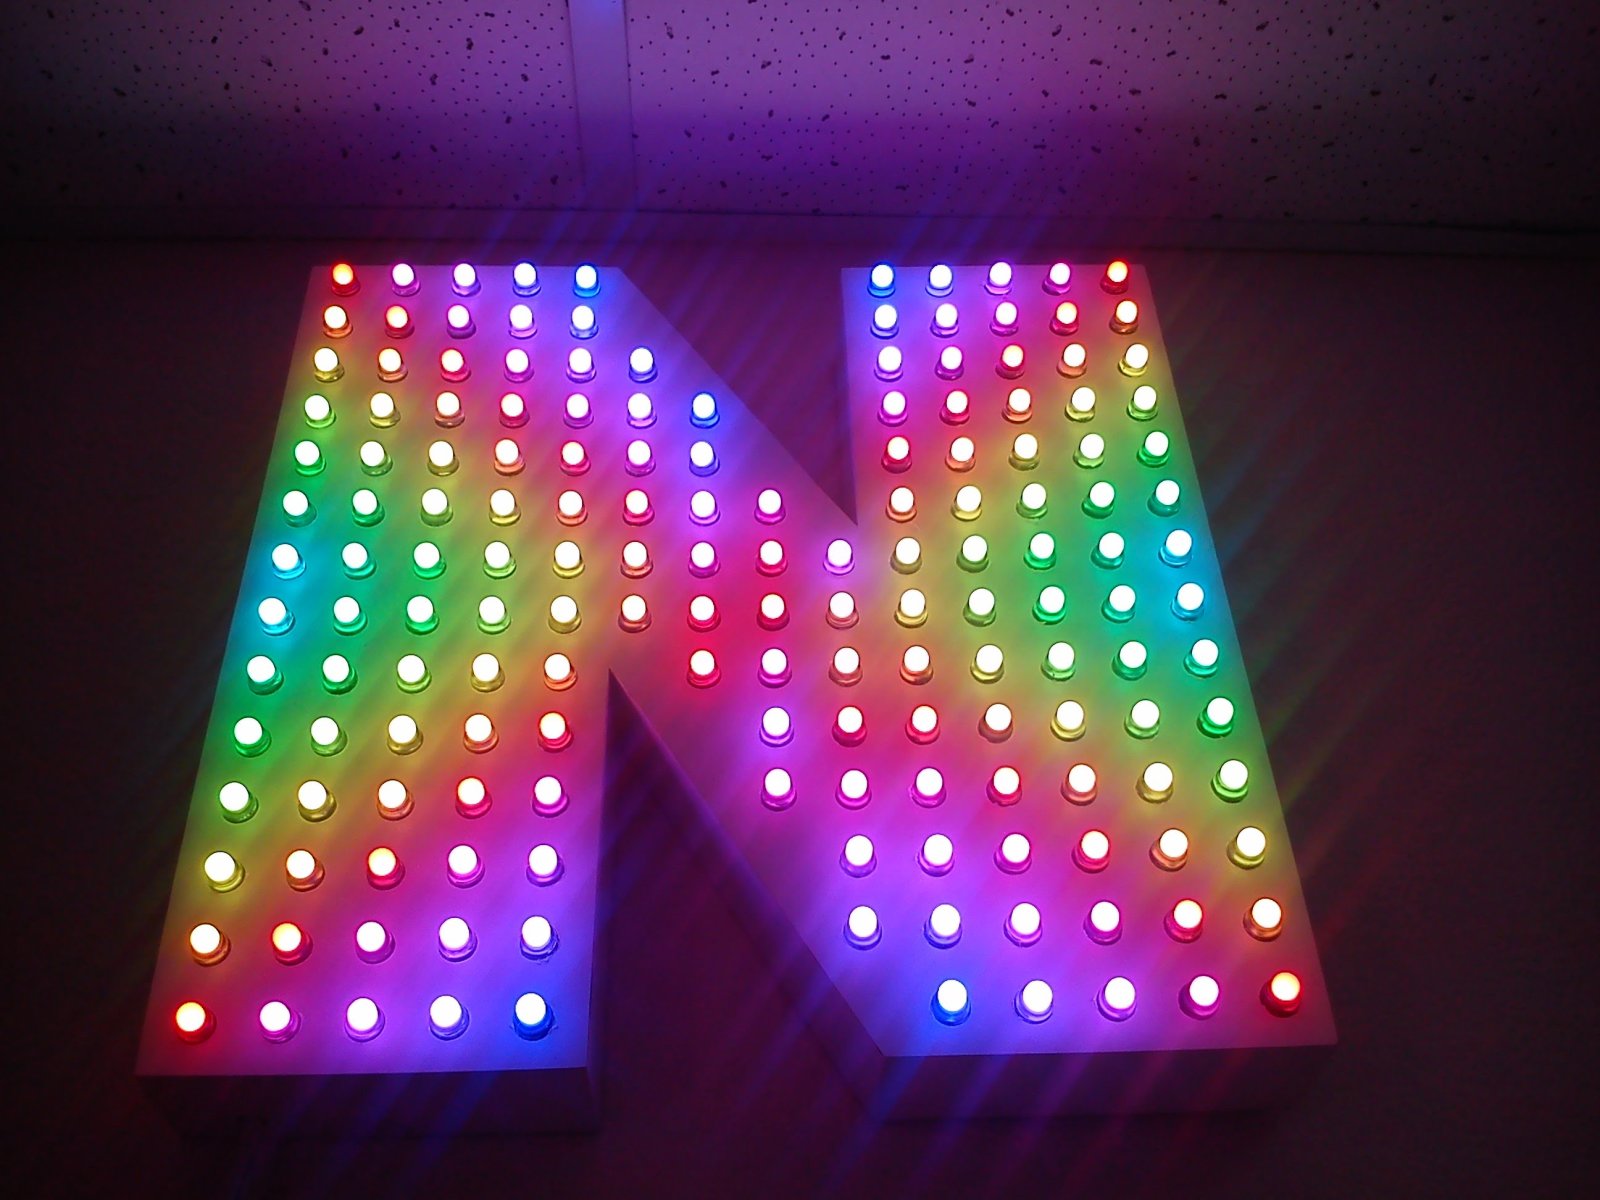 Диодная вывеска. РГБ диоды на вывеску. Led Matrix RGB 30w световой прибор. Объемные светодиодные буквы. Буквы со светодиодной подсветкой.